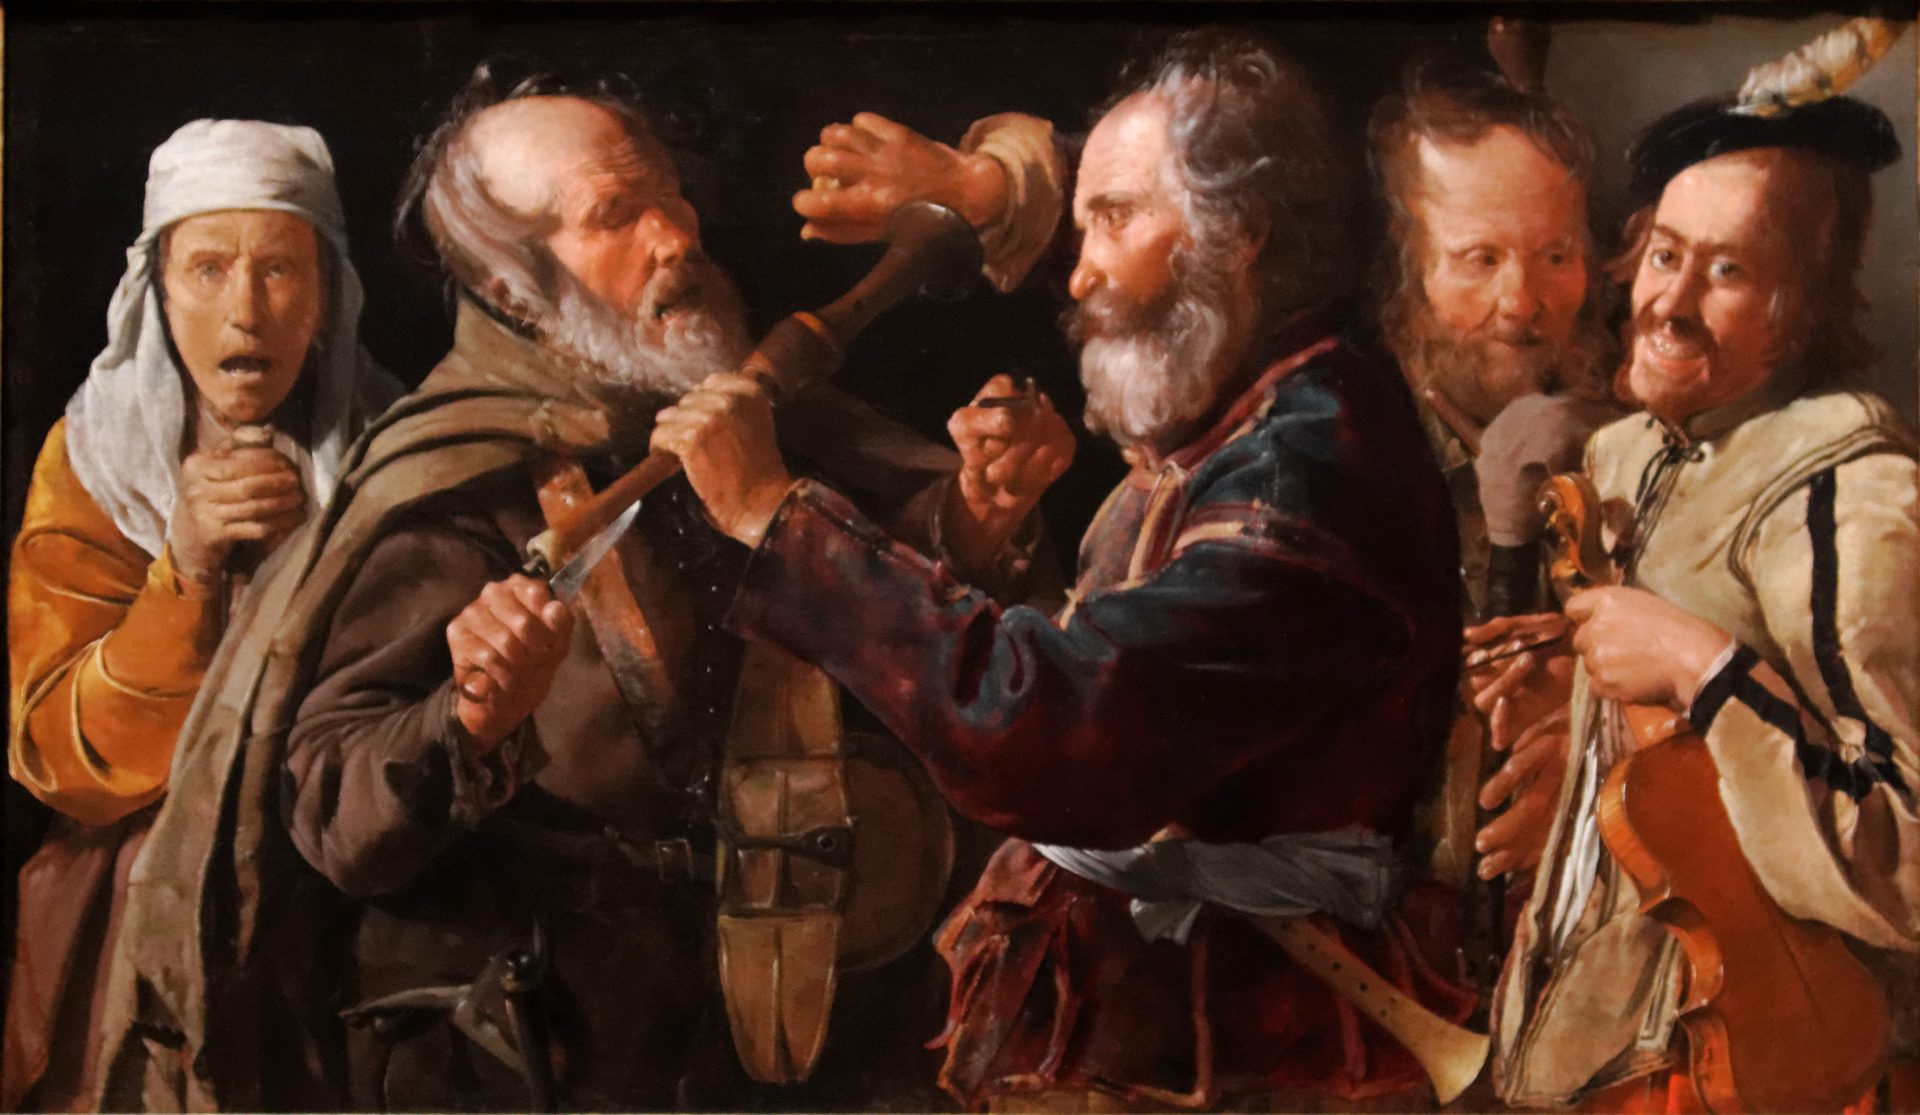 En målning där två personer slåss med tillhyggen och tre personer tittar på.